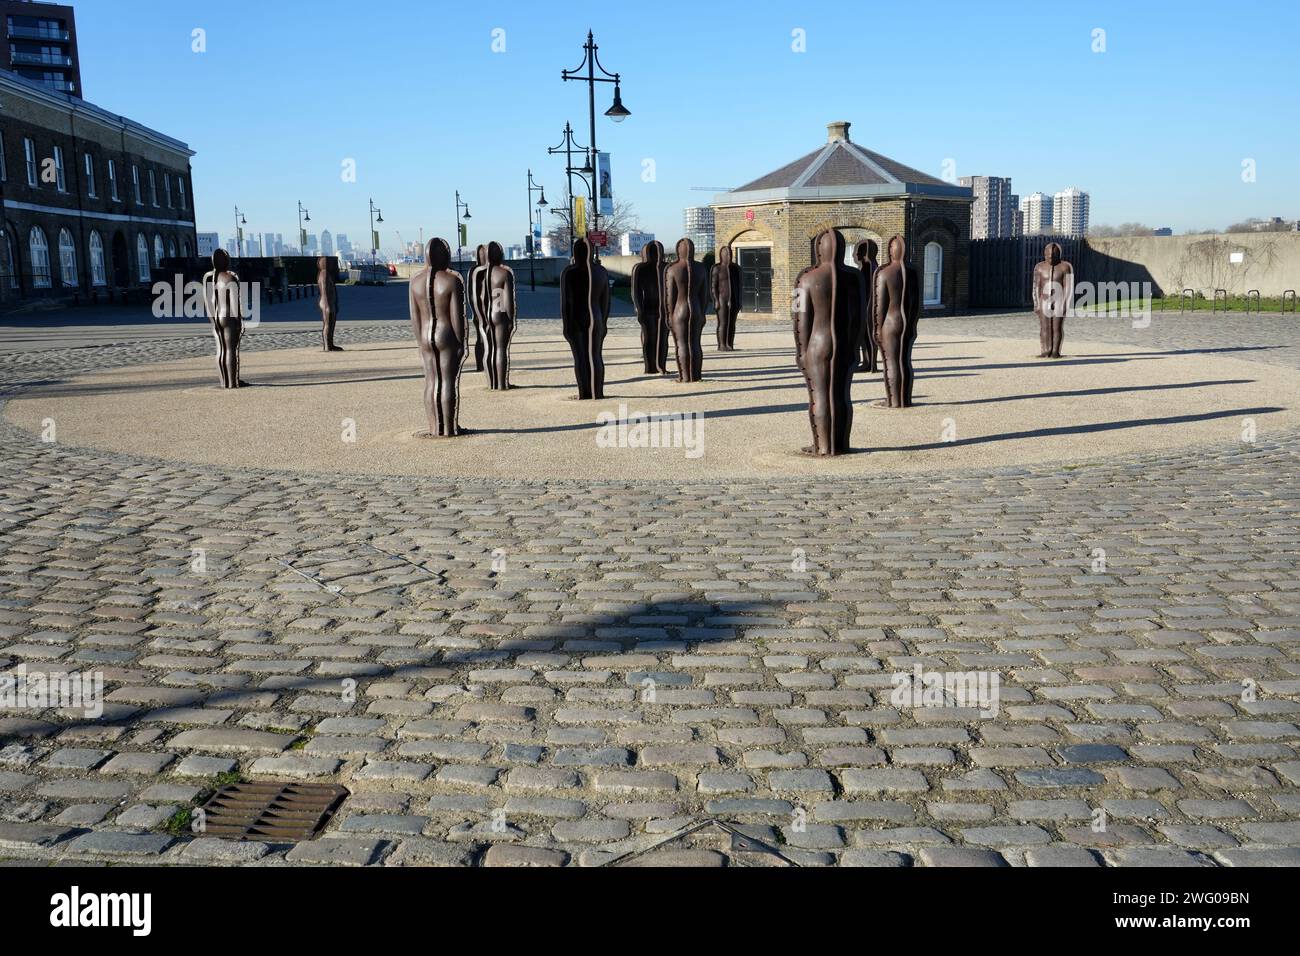 “Assembly” par le sculpteur Peter Burke à Woolwich Arsenal. Figurines masculines en acier moulé. Woolwich, Londres, Royaume-Uni, 19 janvier 2024. Banque D'Images